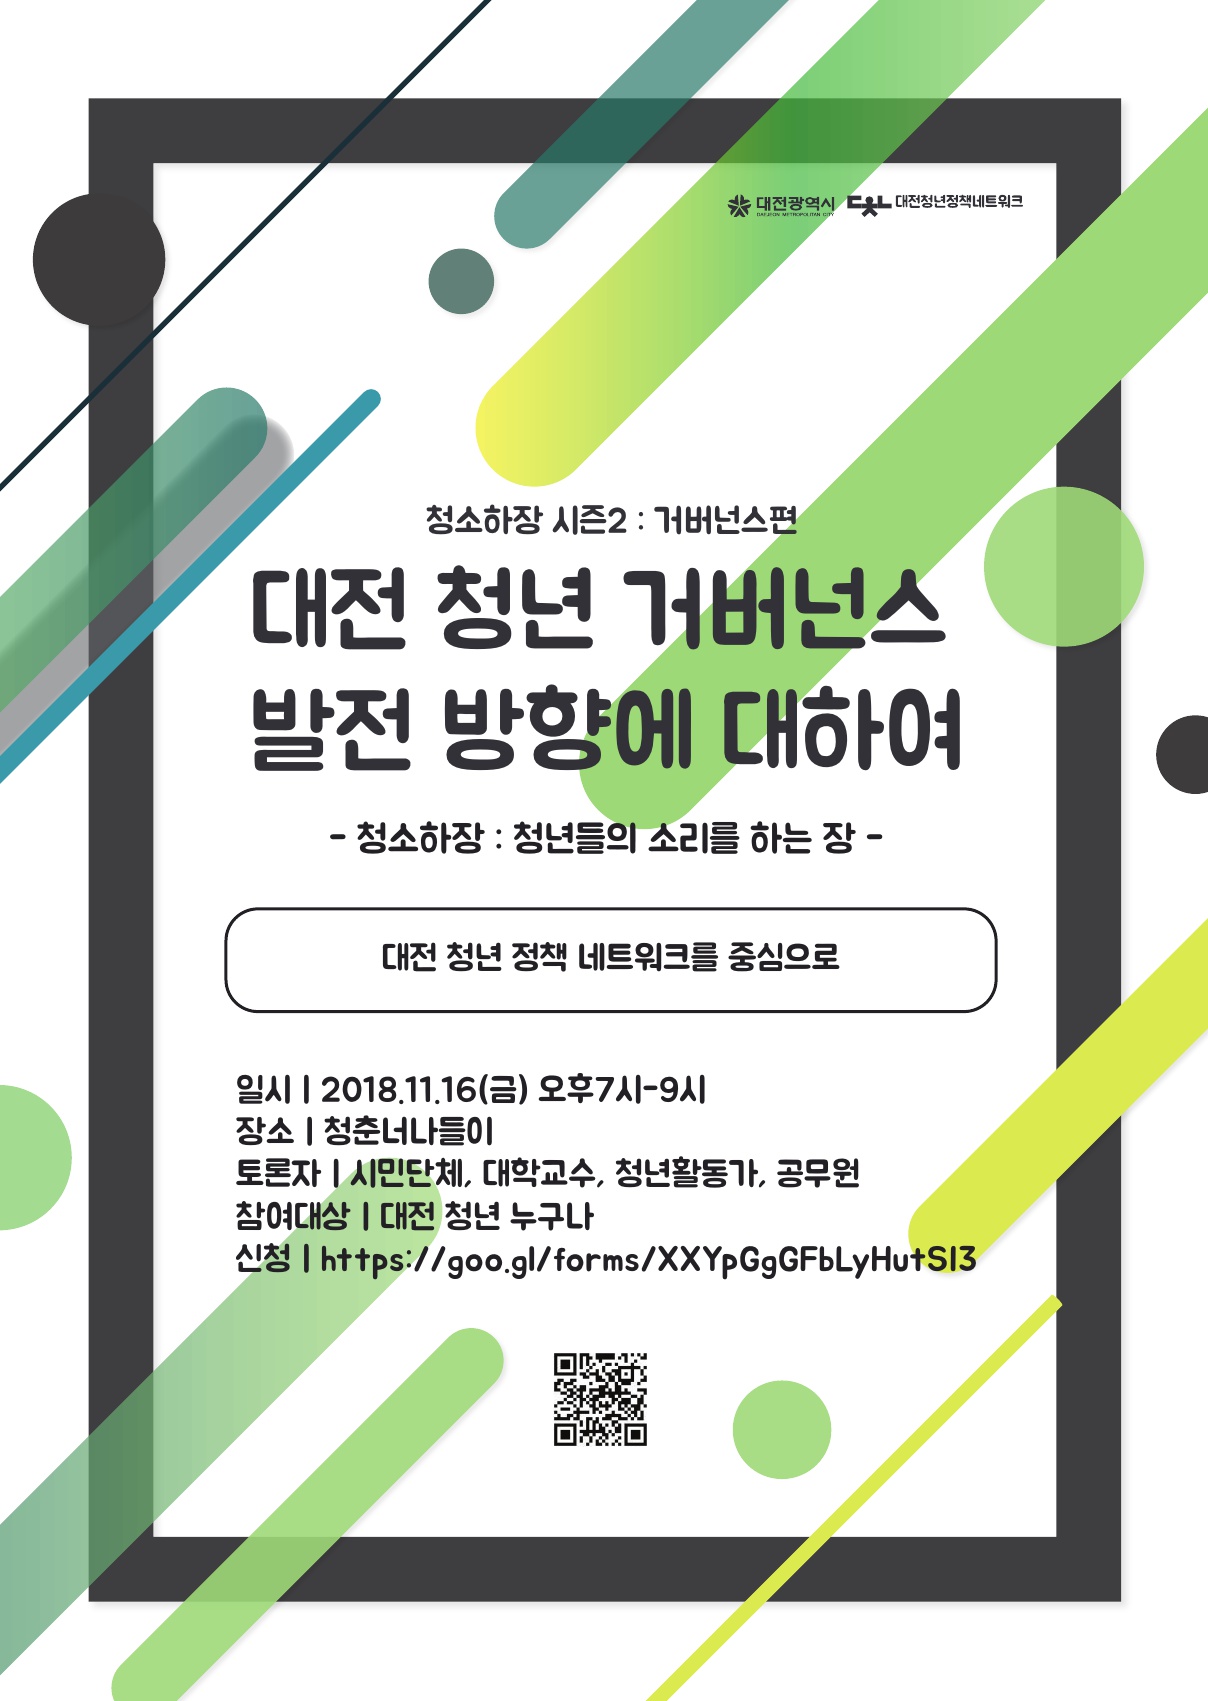 청년거버넌스  토론회  개최 (11.16, 금  19:00)